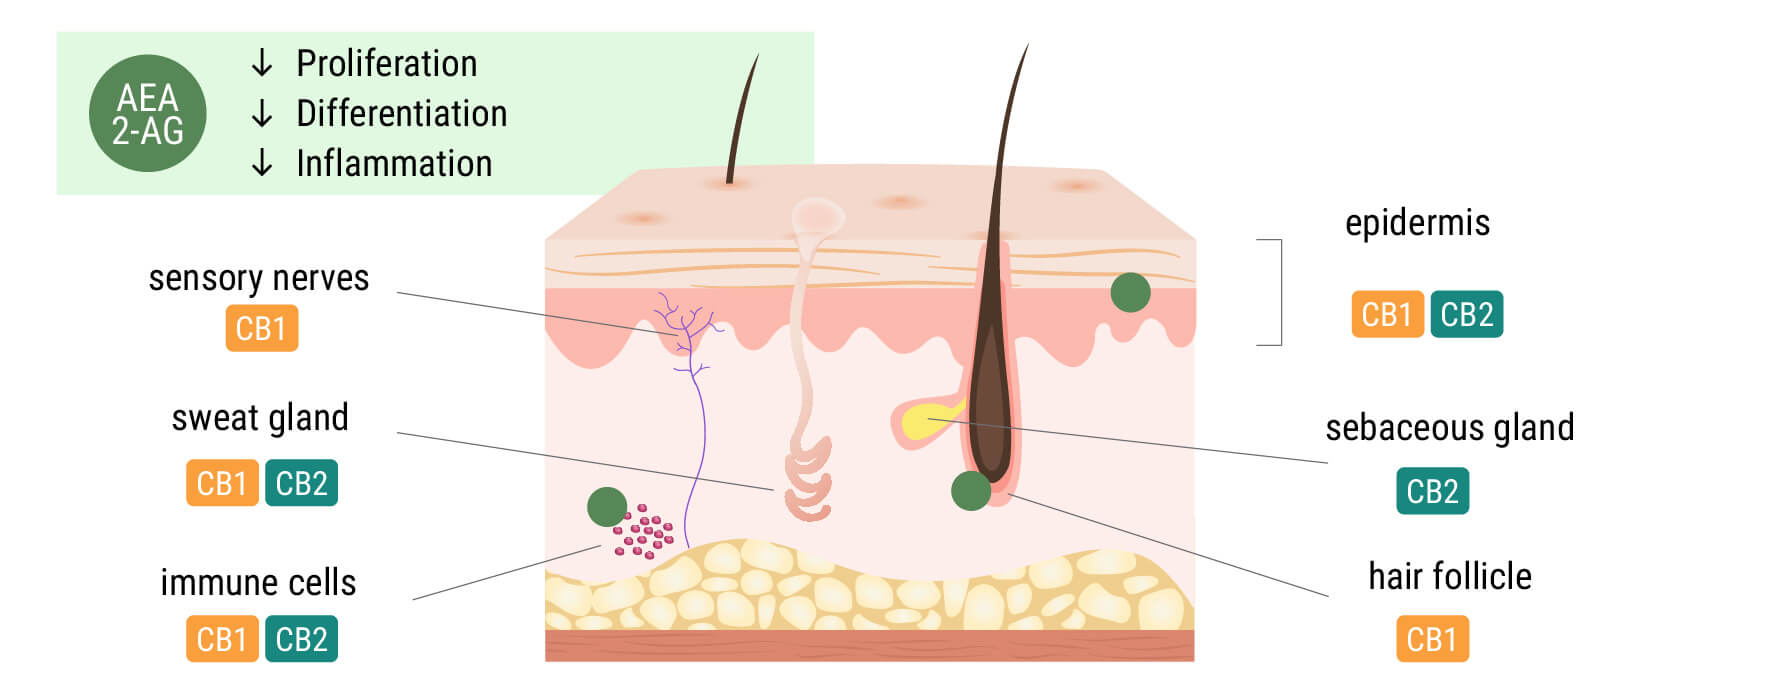 El sistema endocannabinoide en la piel